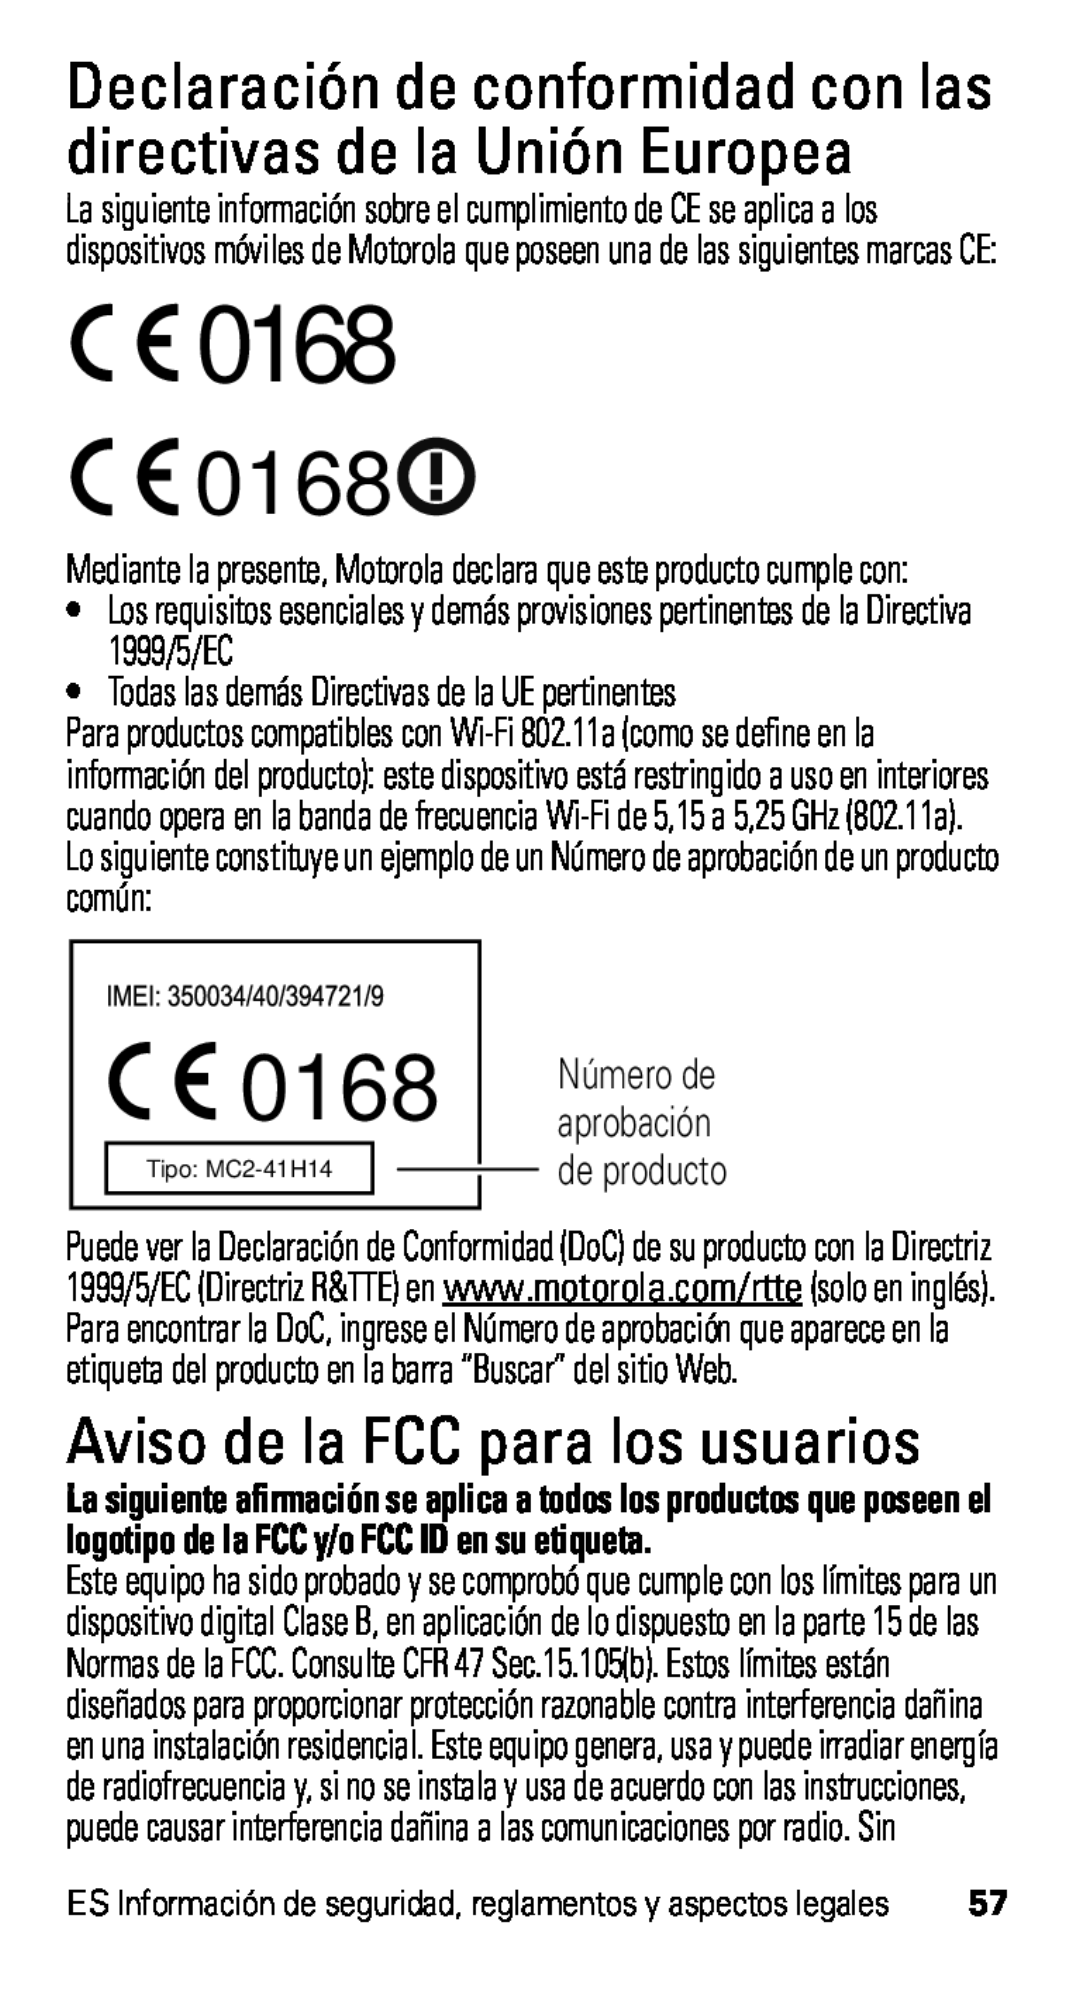 Motorola D1 Aviso de la FCC para los usuarios, Declaración de conformidad con las directivas de la Unión Europea, 0168 